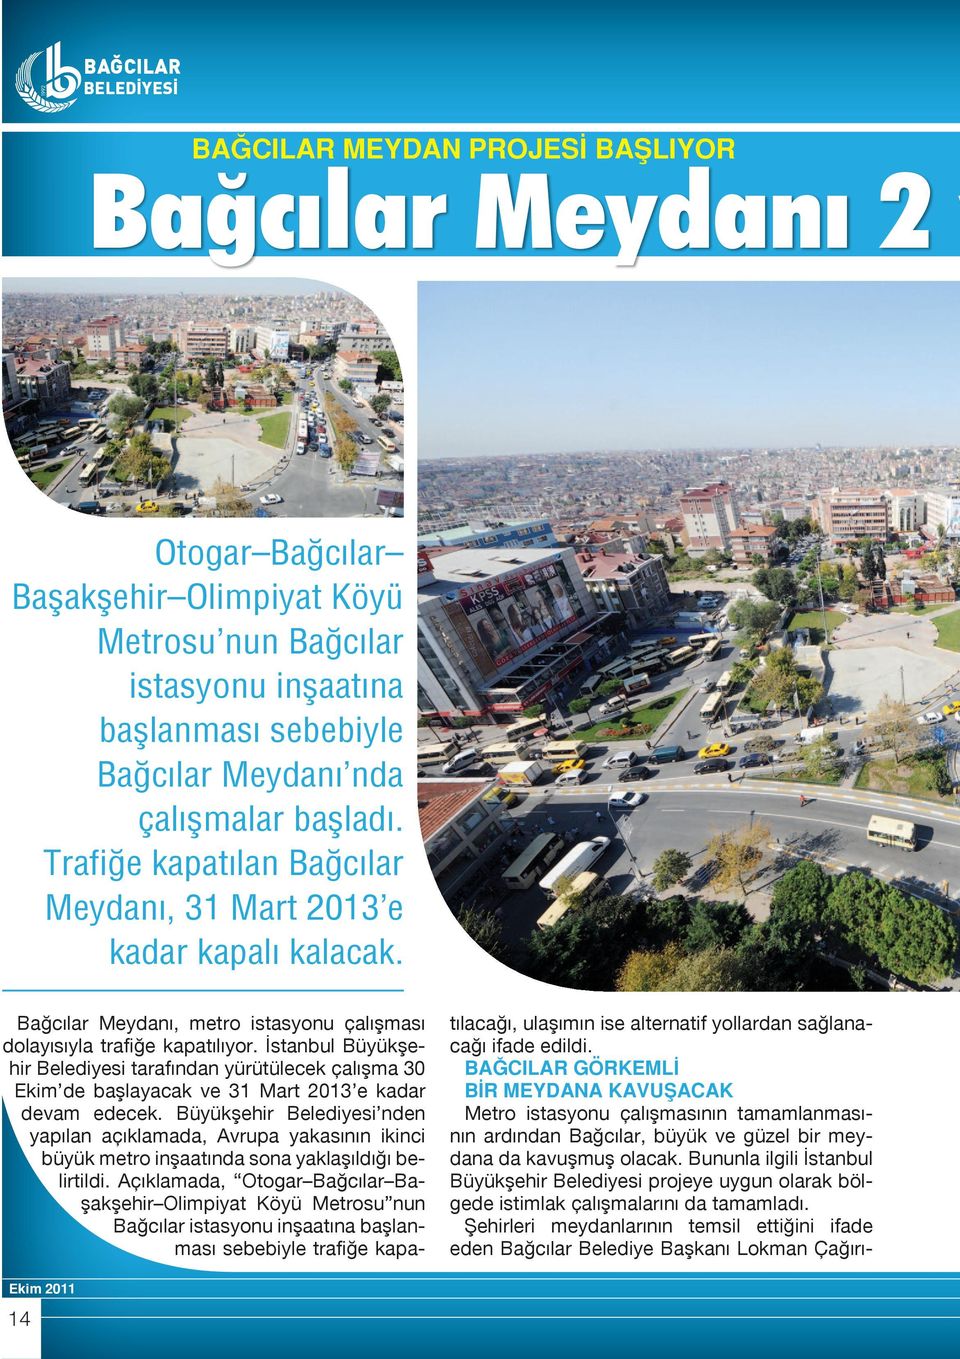 İstanbul Büyükşehir Belediyesi tarafından yürütülecek çalışma 30 Ekim de başlayacak ve 31 Mart 2013 e kadar devam edecek.